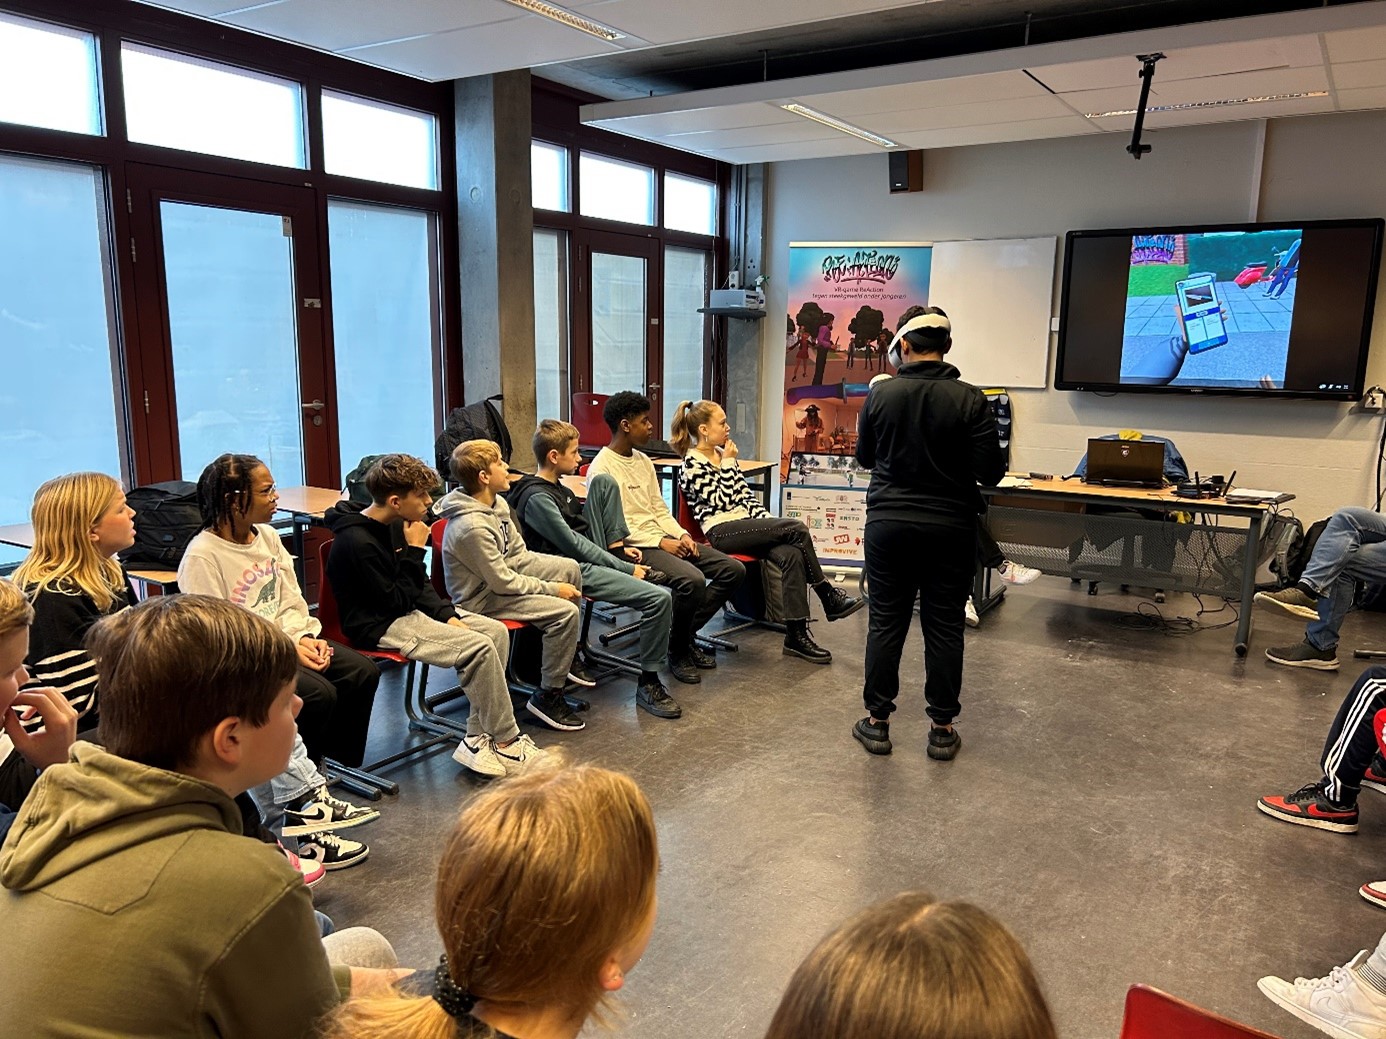 Leerlingen zitten in een kring en kijken hoe één leerling met een VR-bril op een spel speelt. Op de achtergrond is de game te zien op een smartboard.